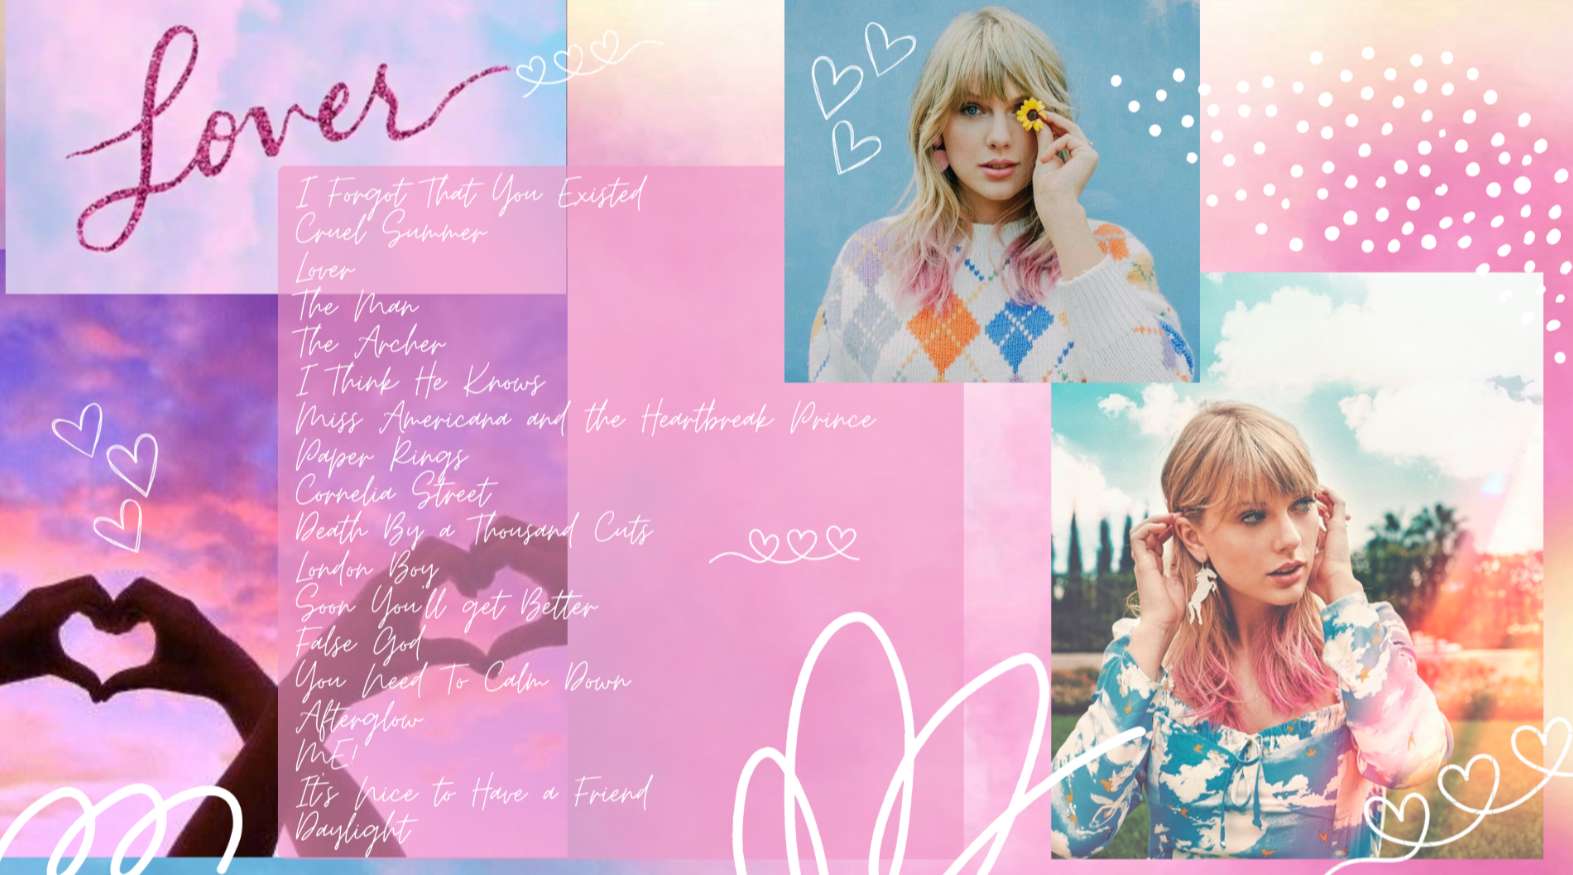 Colagem da era Taylor Swift Lover puzzle online a partir de fotografia